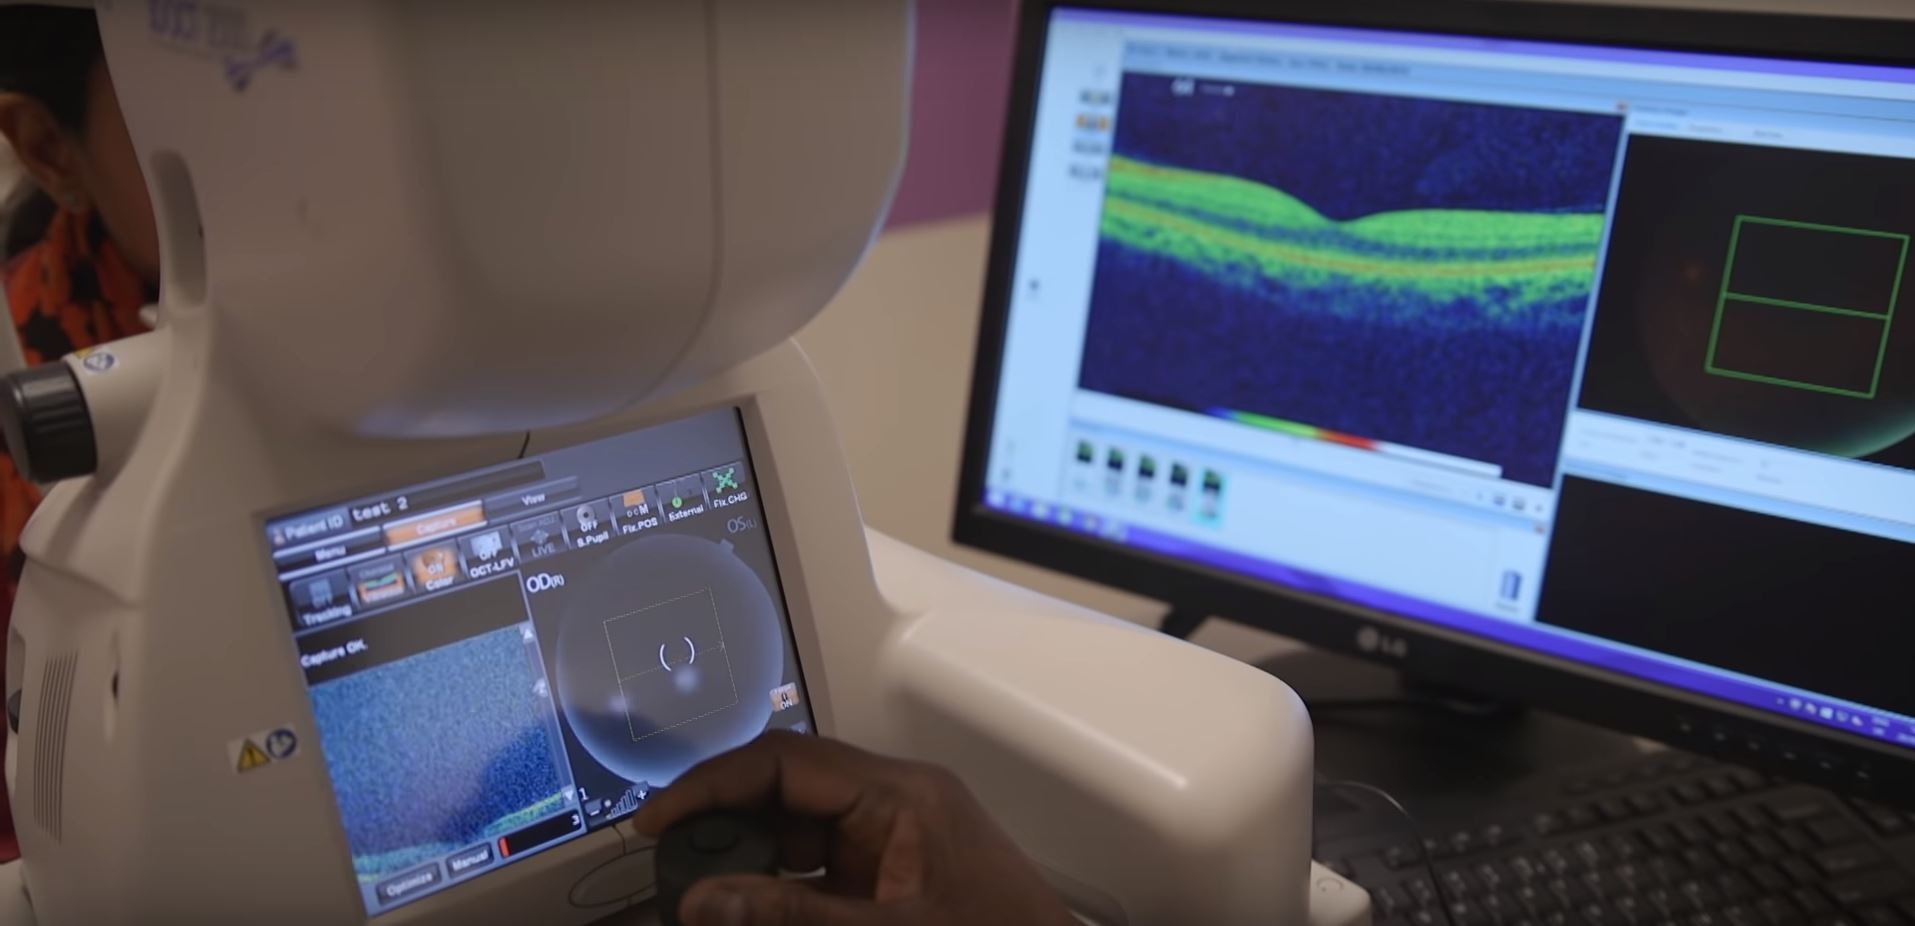 ИИ-система DeepMind способна диагностировать более 50 глазных болезней